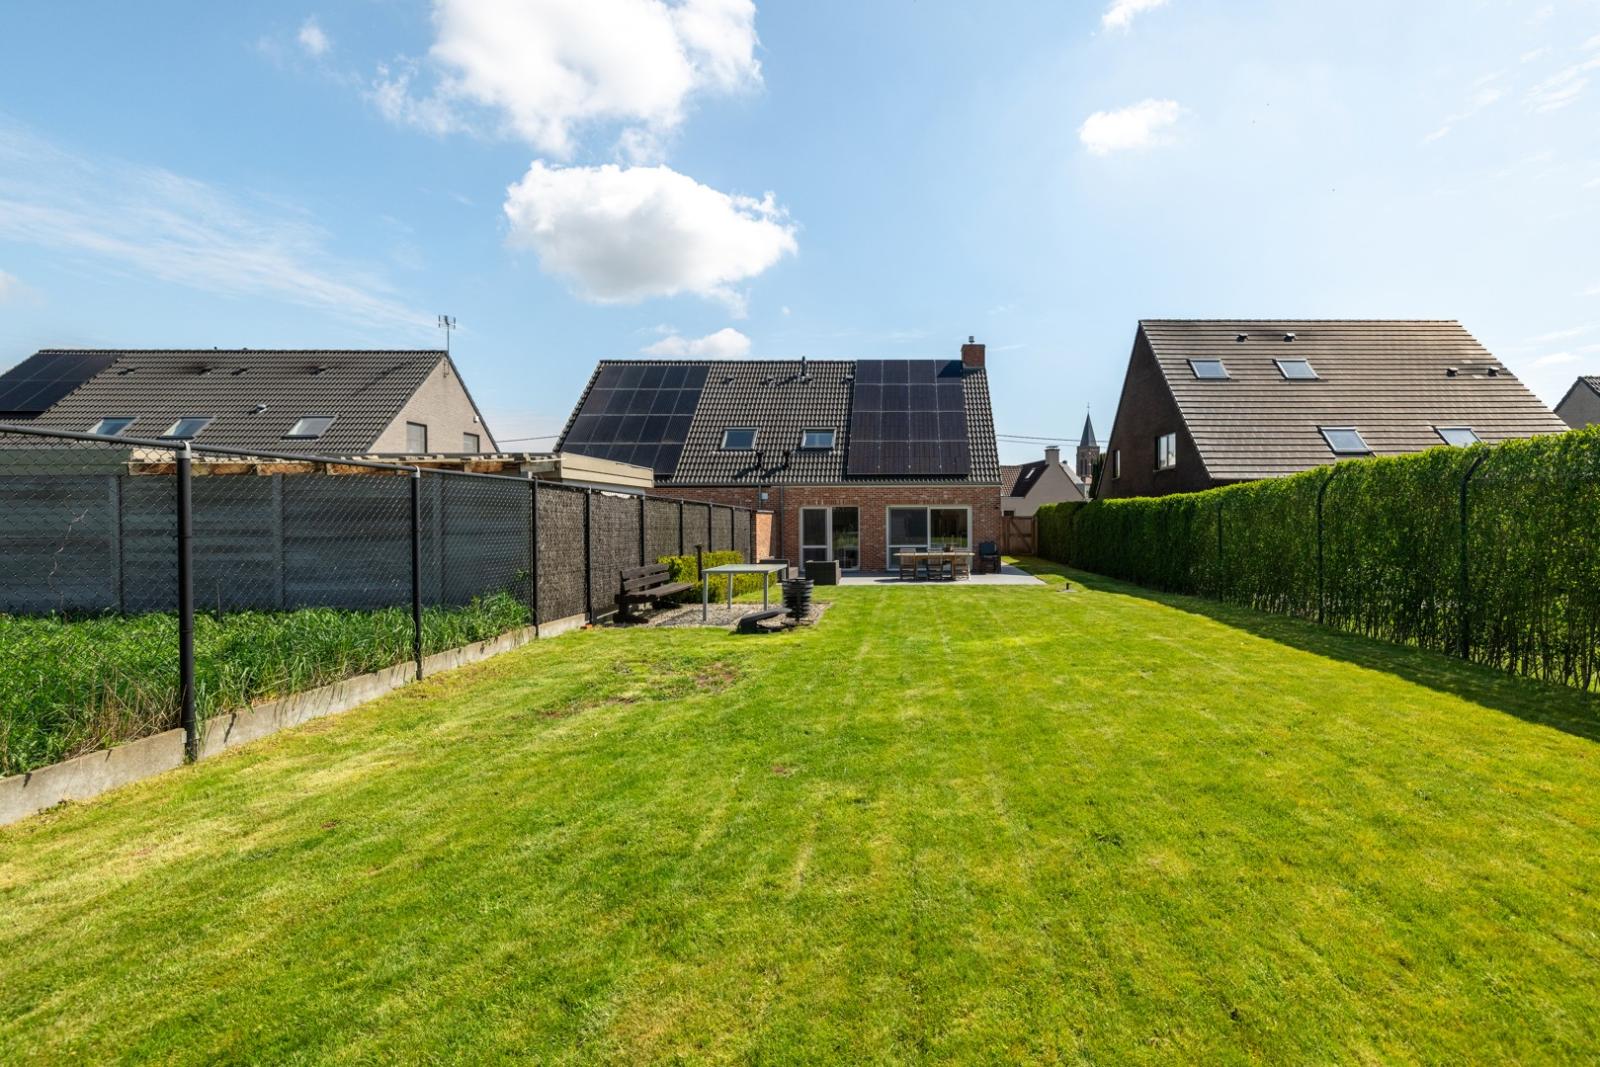 Instapklare & energiezuinige (A-label) HOB met 3 slaapkamers & garage op rustige locatie te Kooigem (Kortrijk)!